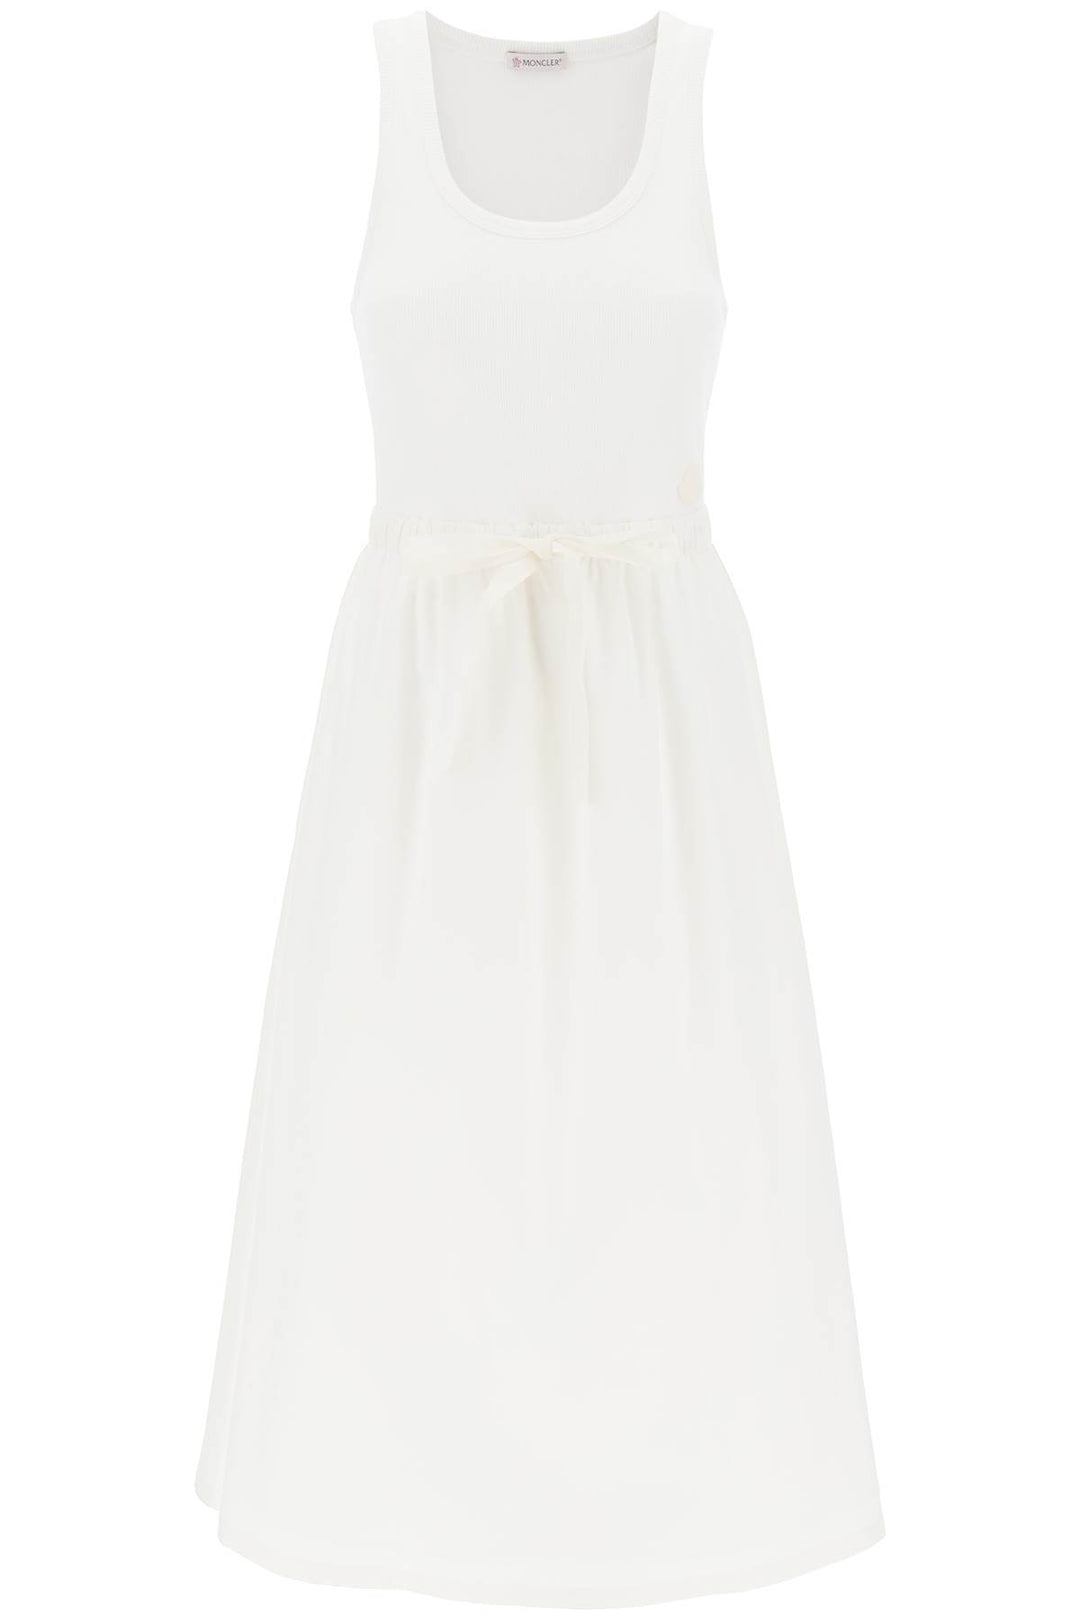 Moncler Two Tone Midi Dress   Bianco